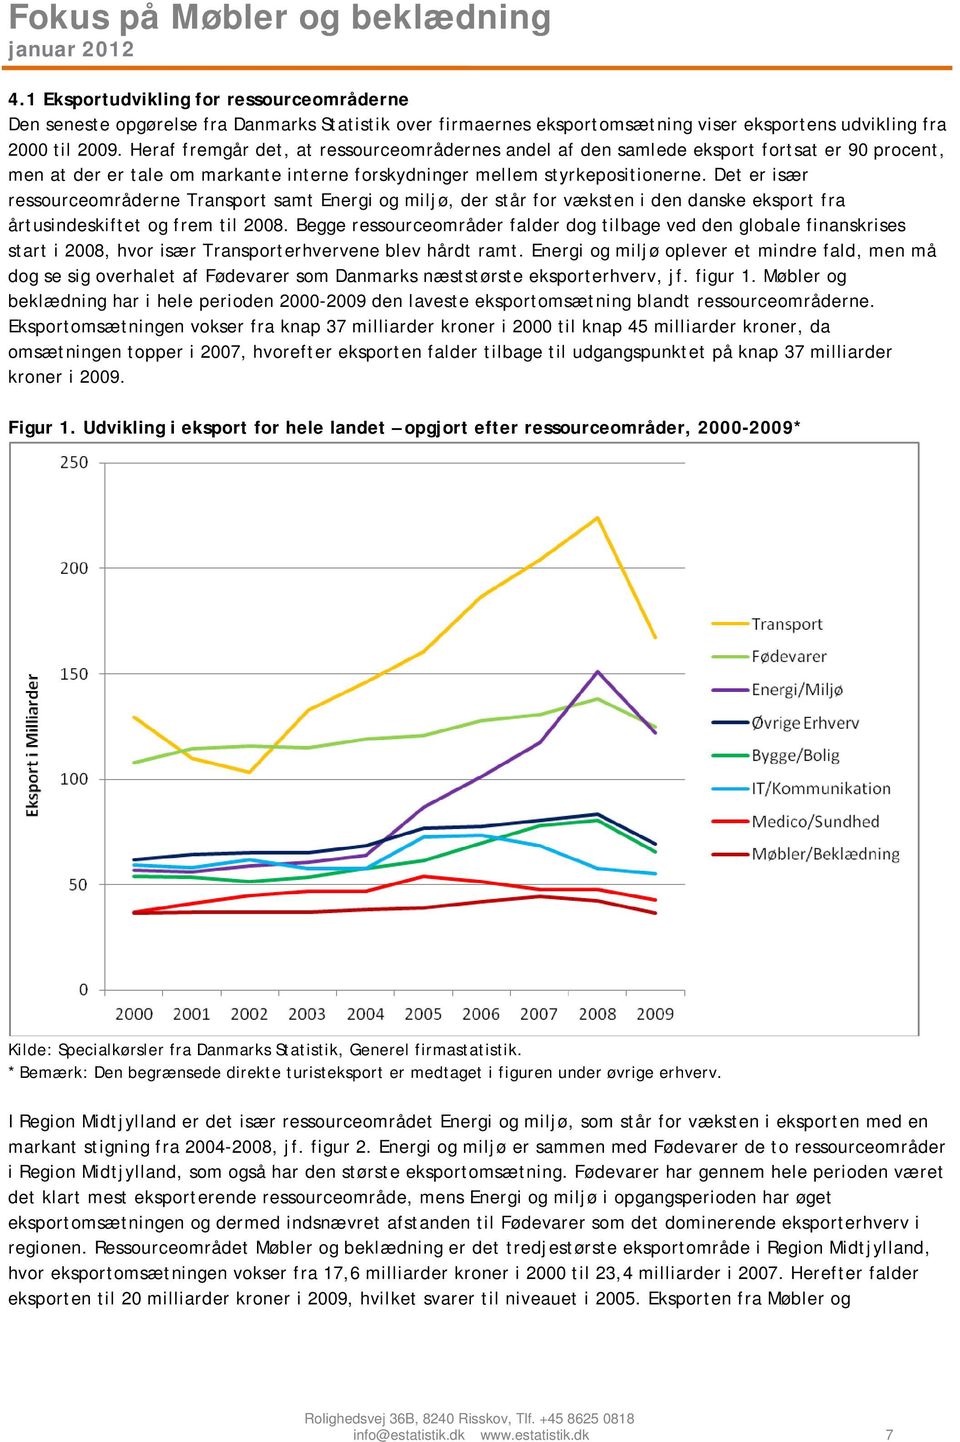 Det er især ressourceområderne Transport samt Energi og miljø, der står for væksten i den danske eksport fra årtusindeskiftet og frem til 2008.